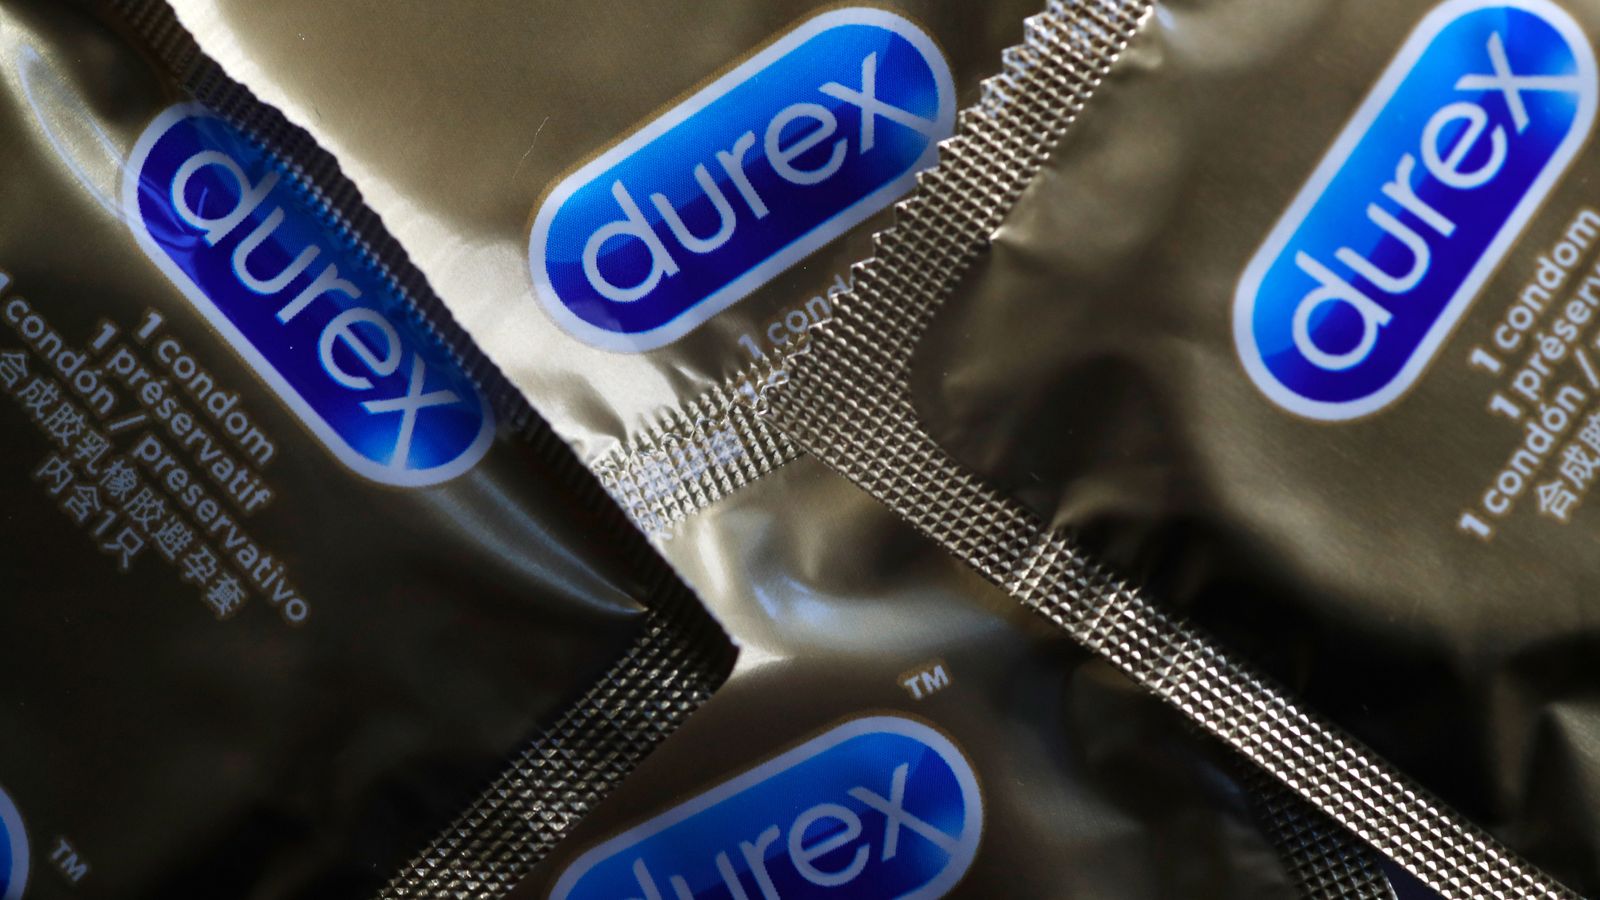 Condom sales shoot up as lockdowns loosen